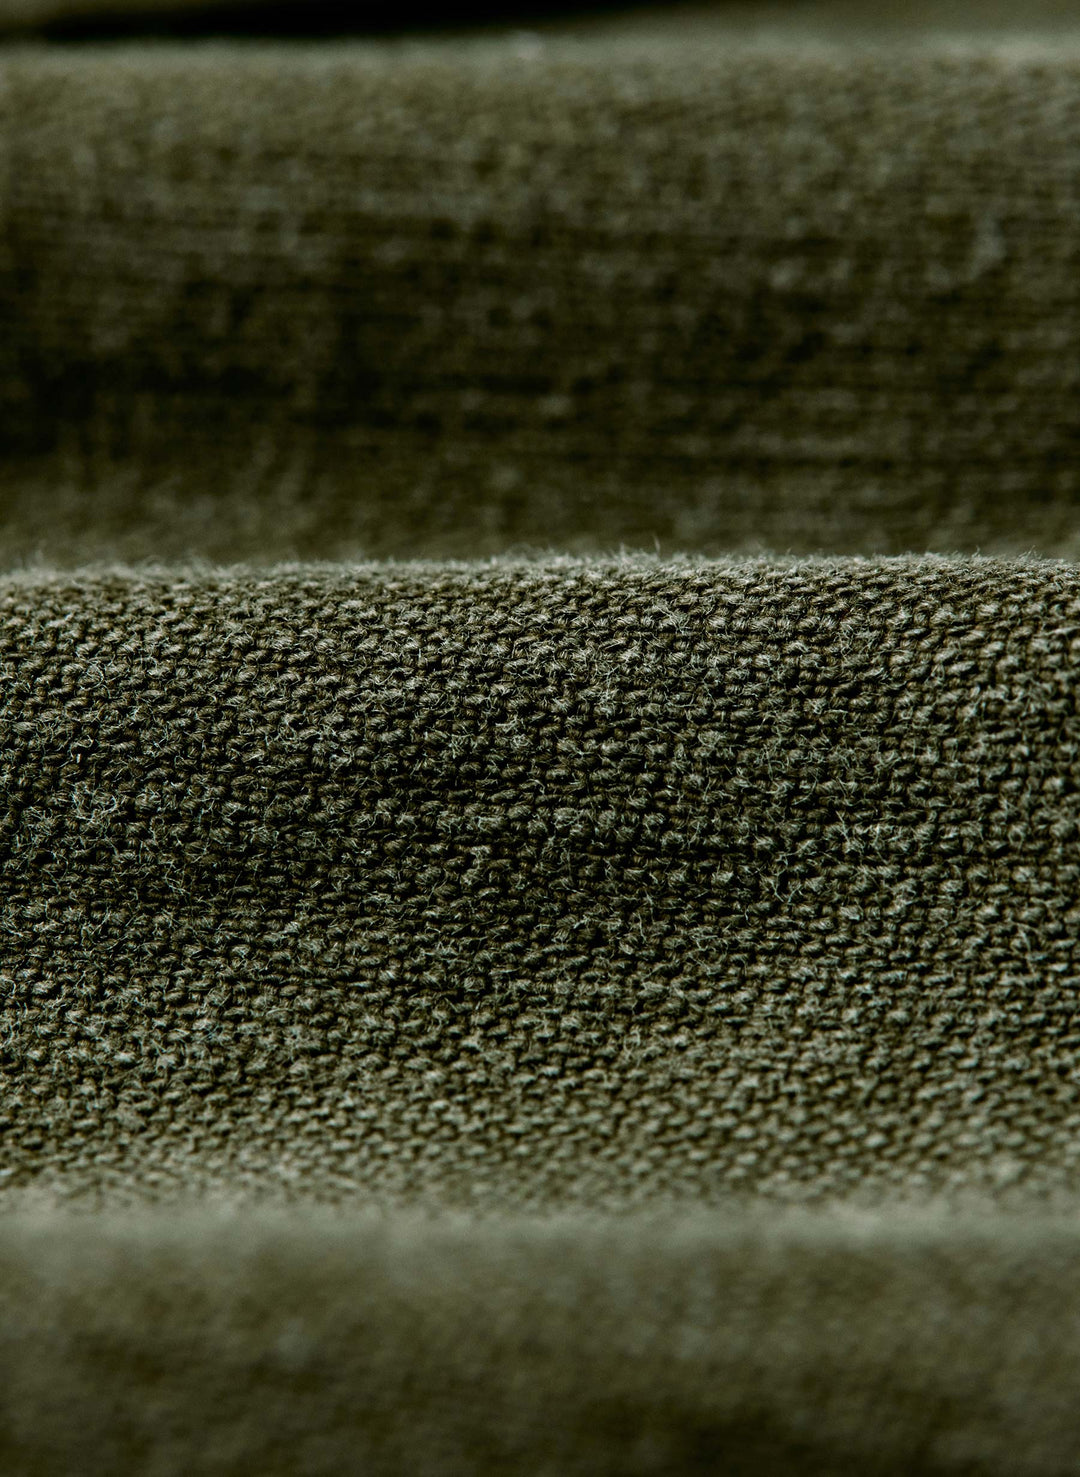 a close up of a cloth